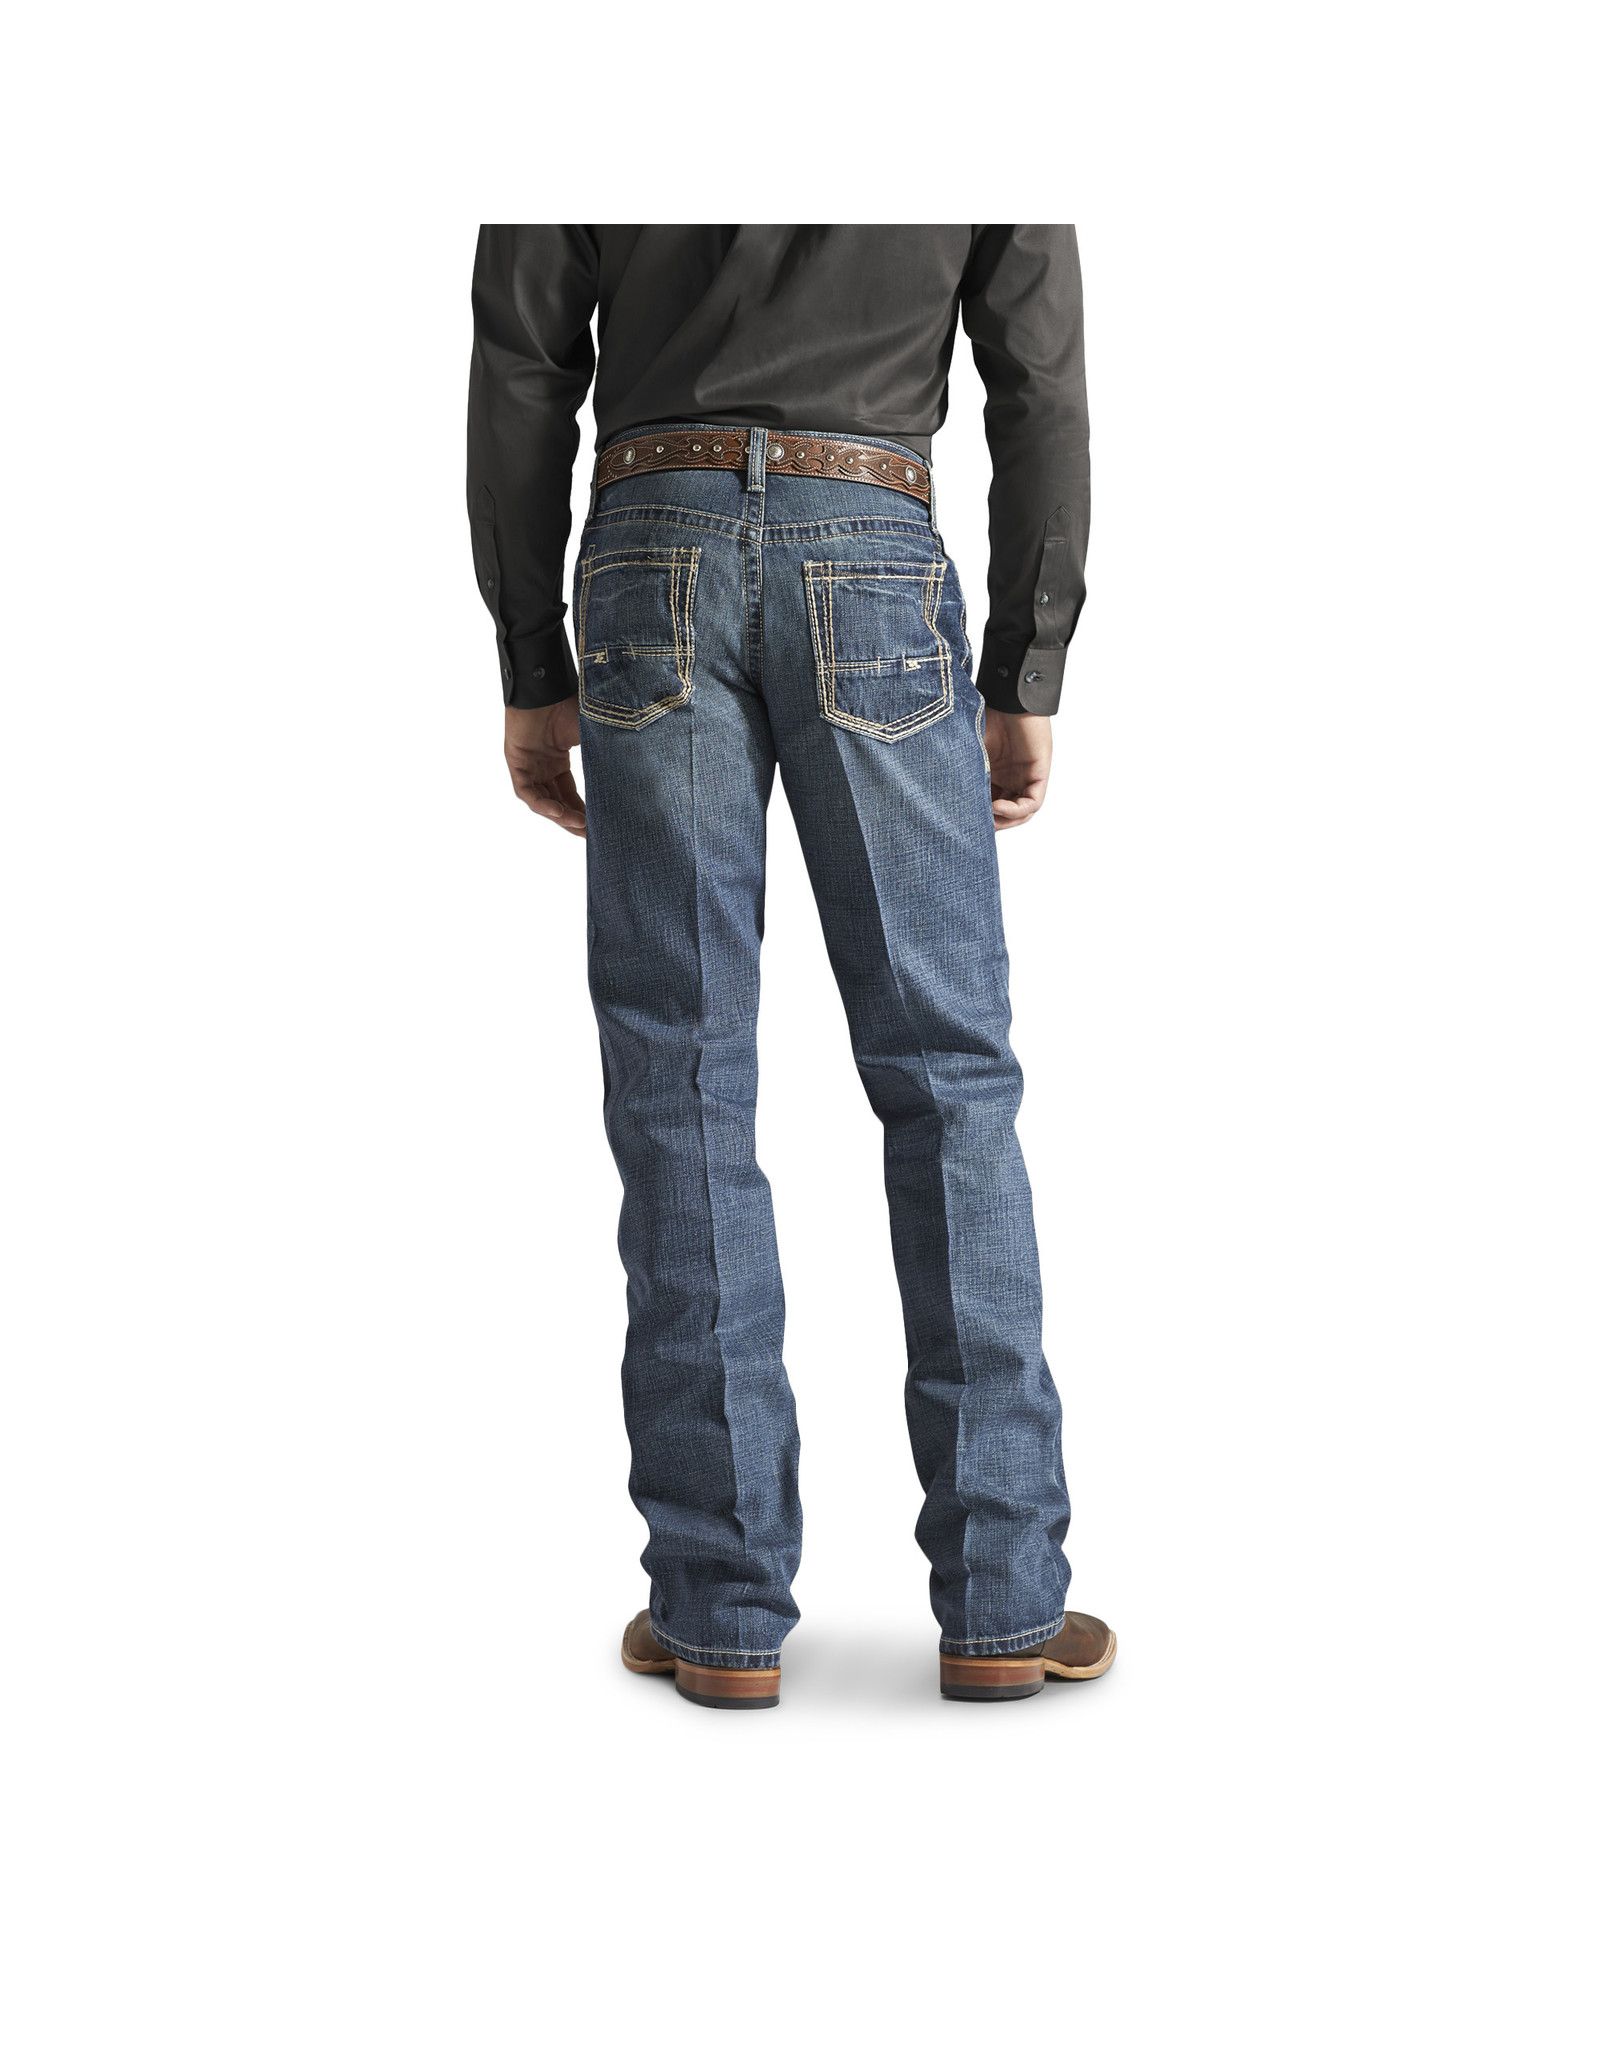 Ariat Men's M4 Gulch 10012136 Jeans